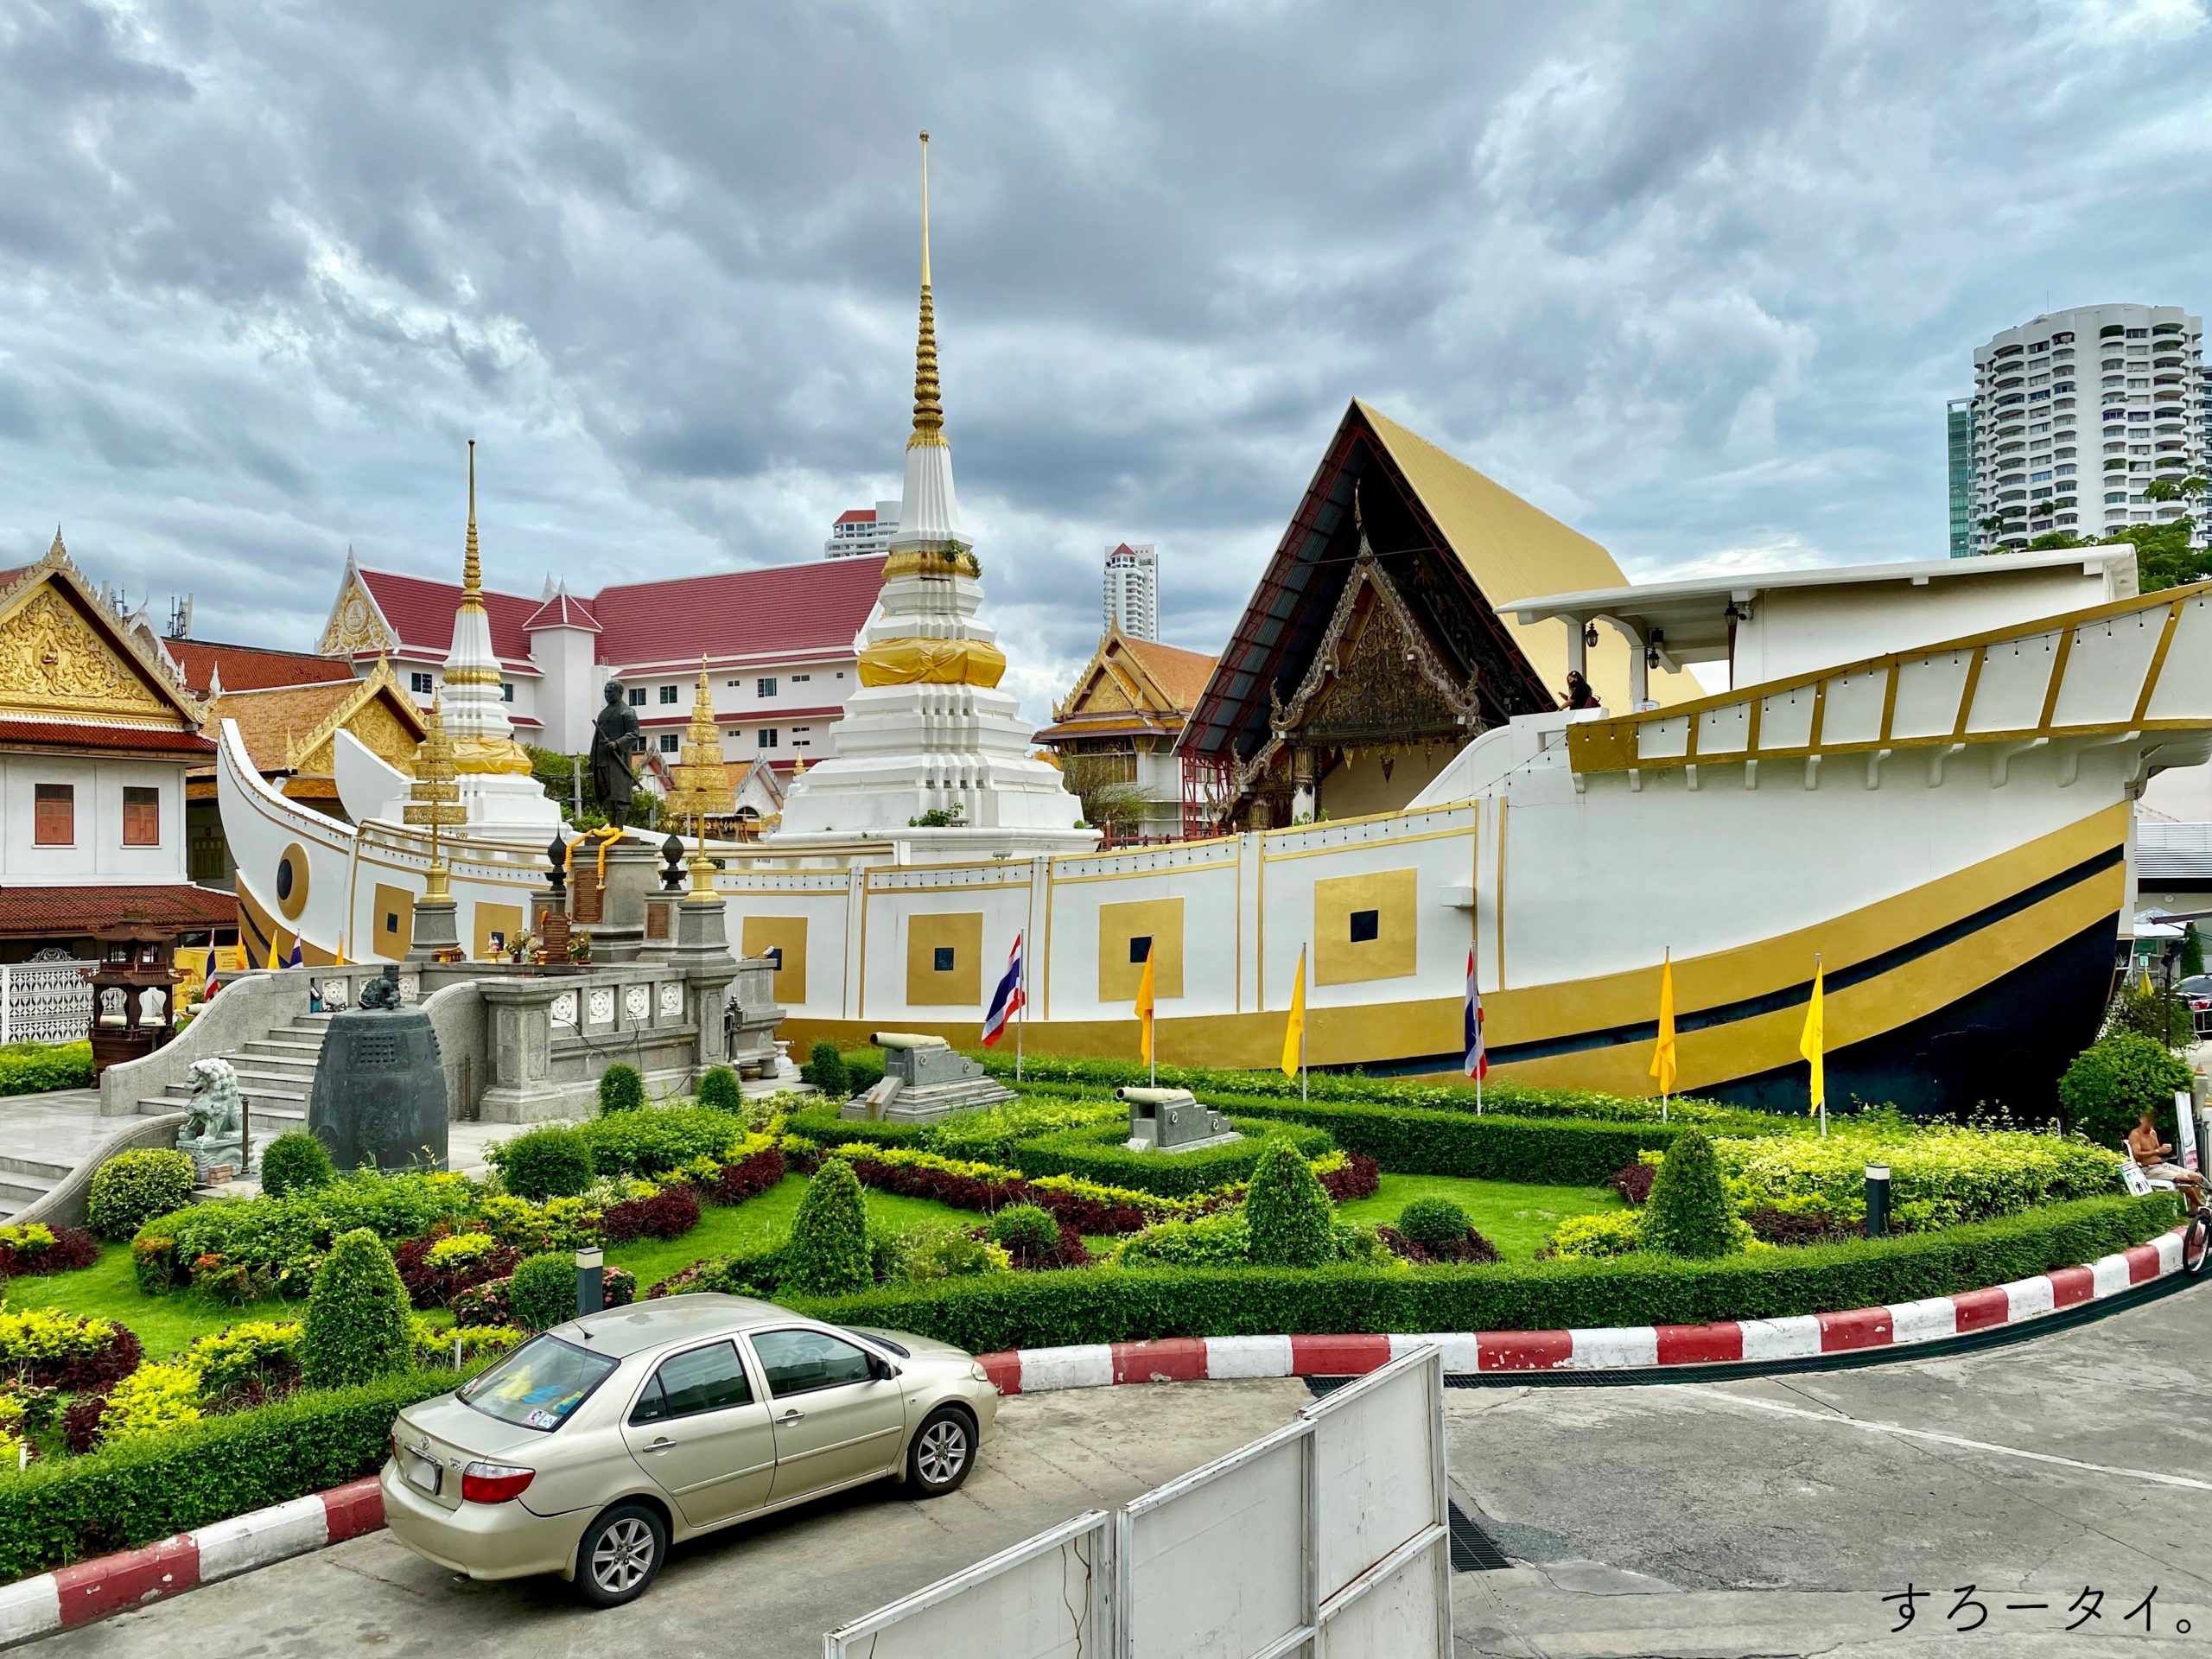 ワット ヤンナワー วัดยานนาวา Wat Yannawa